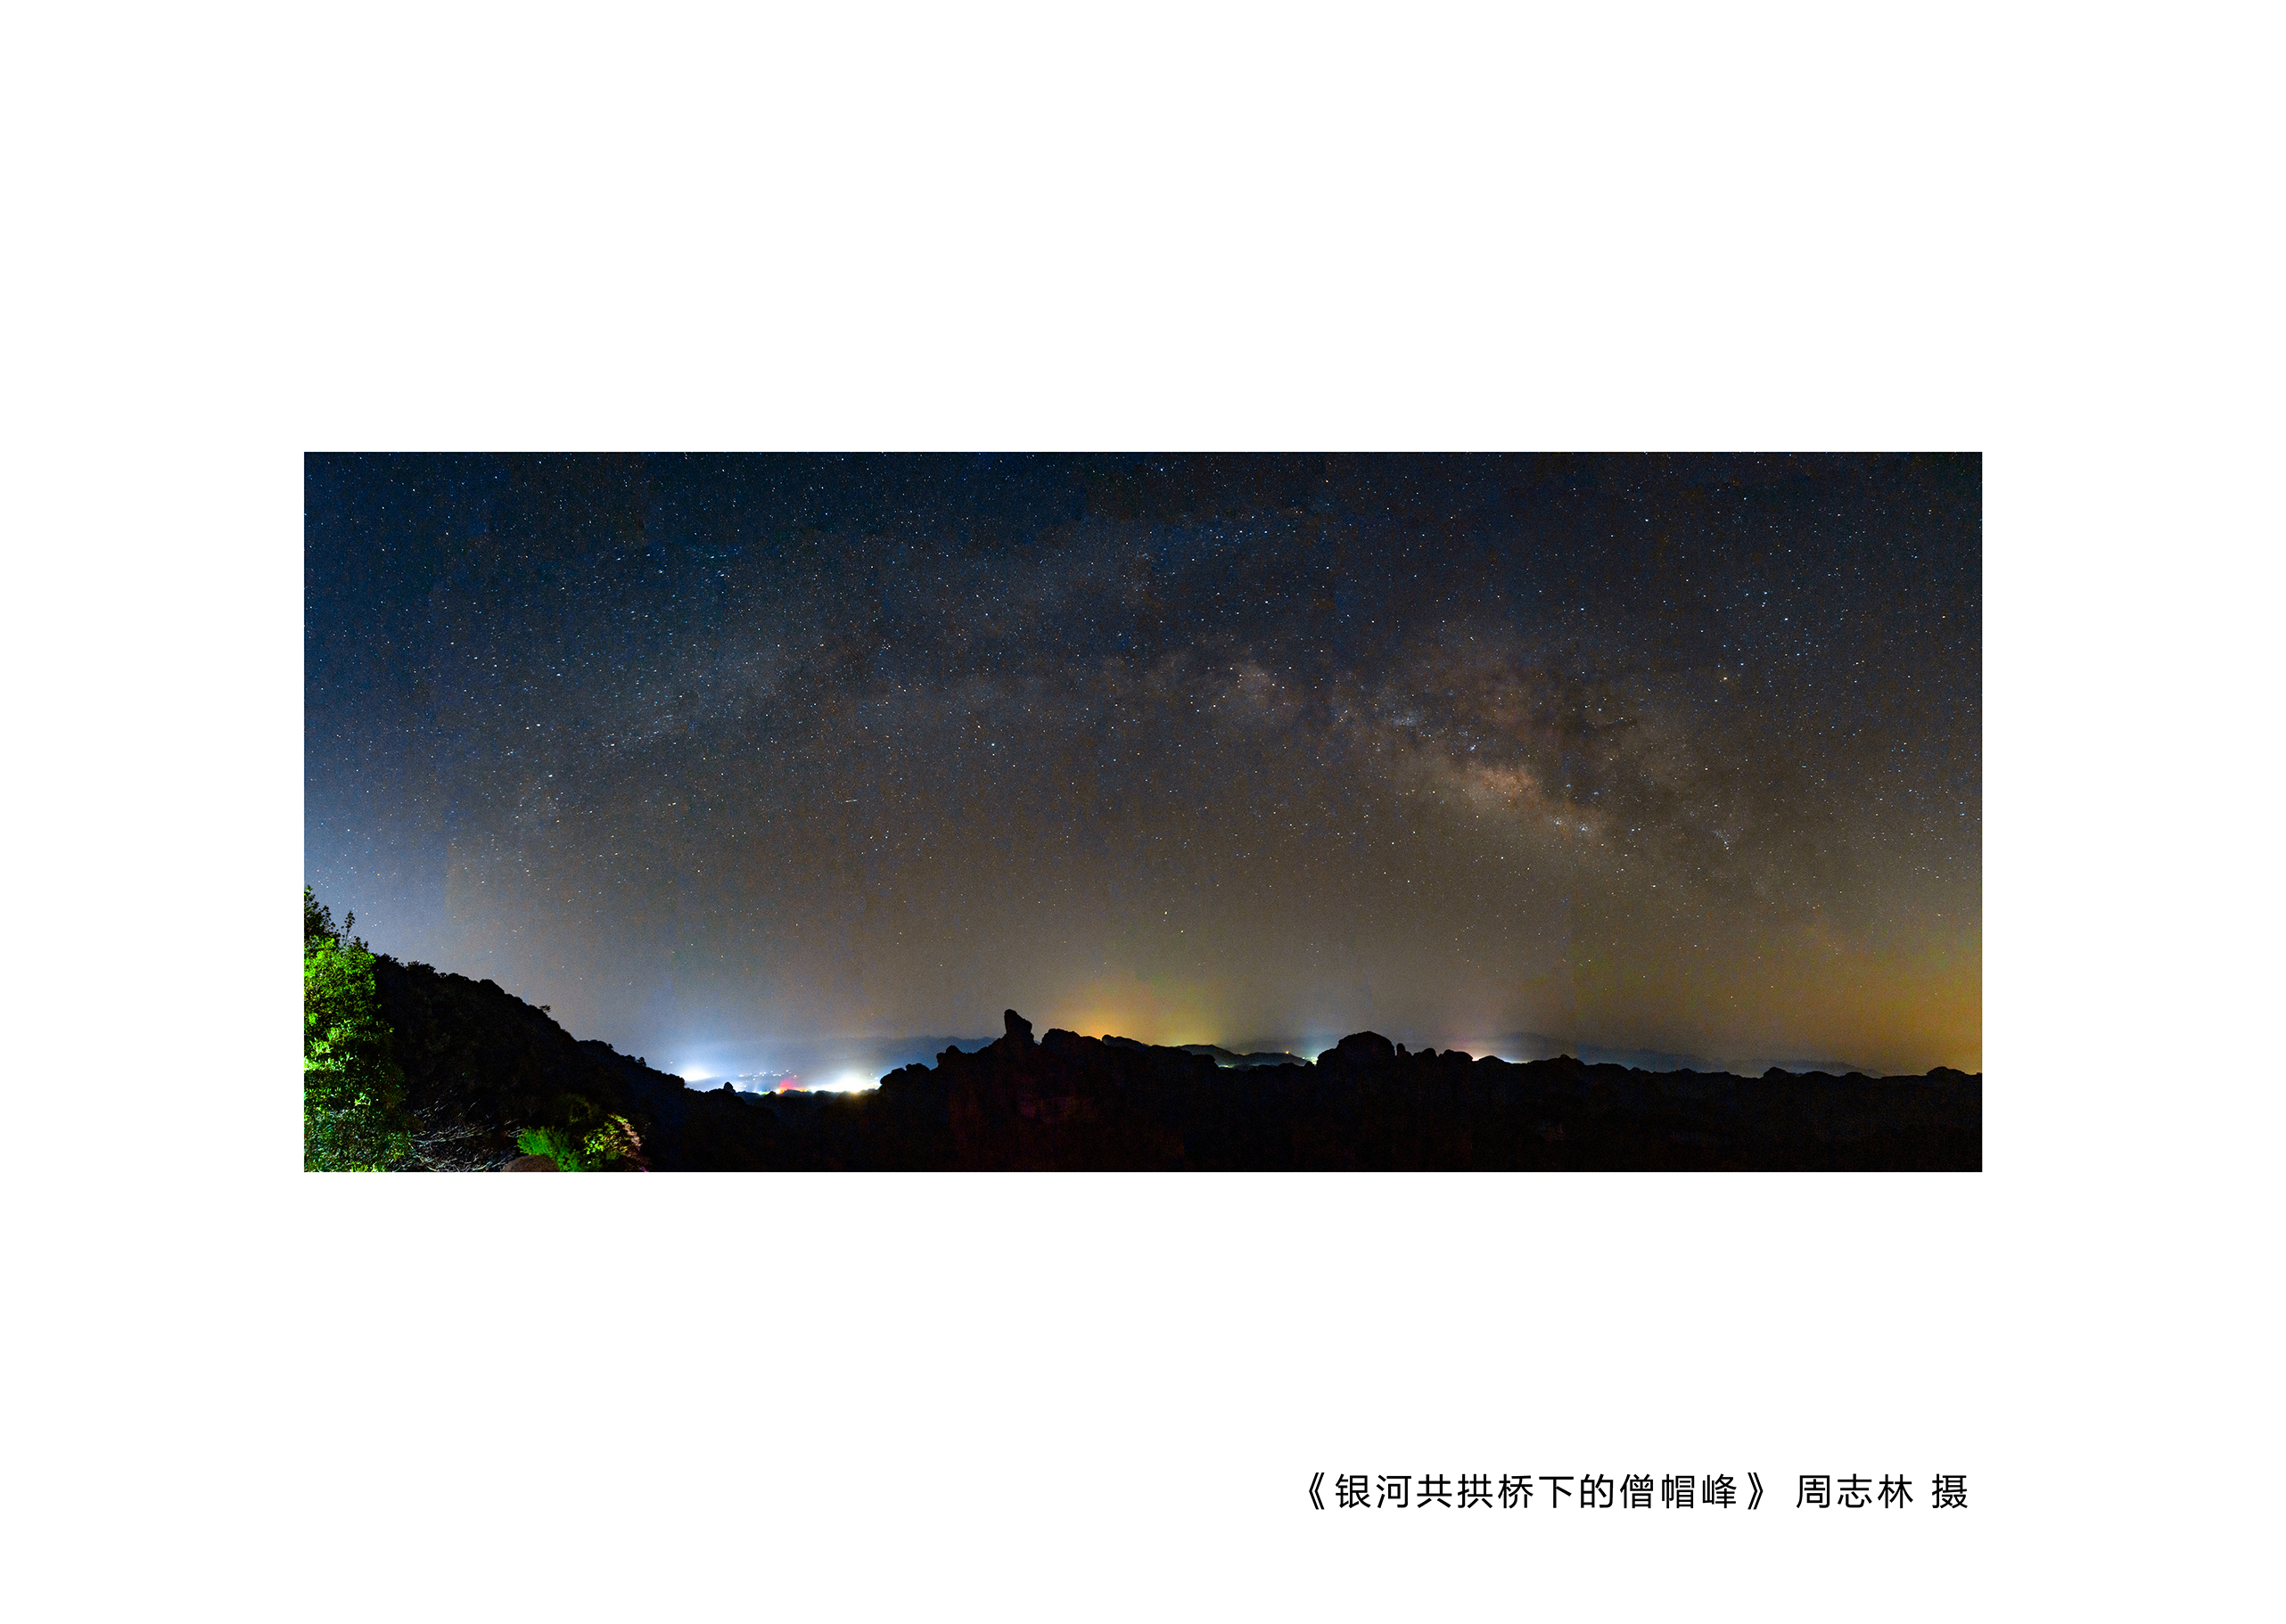 《银河共拱桥下的僧帽峰》周志林 摄.jpg